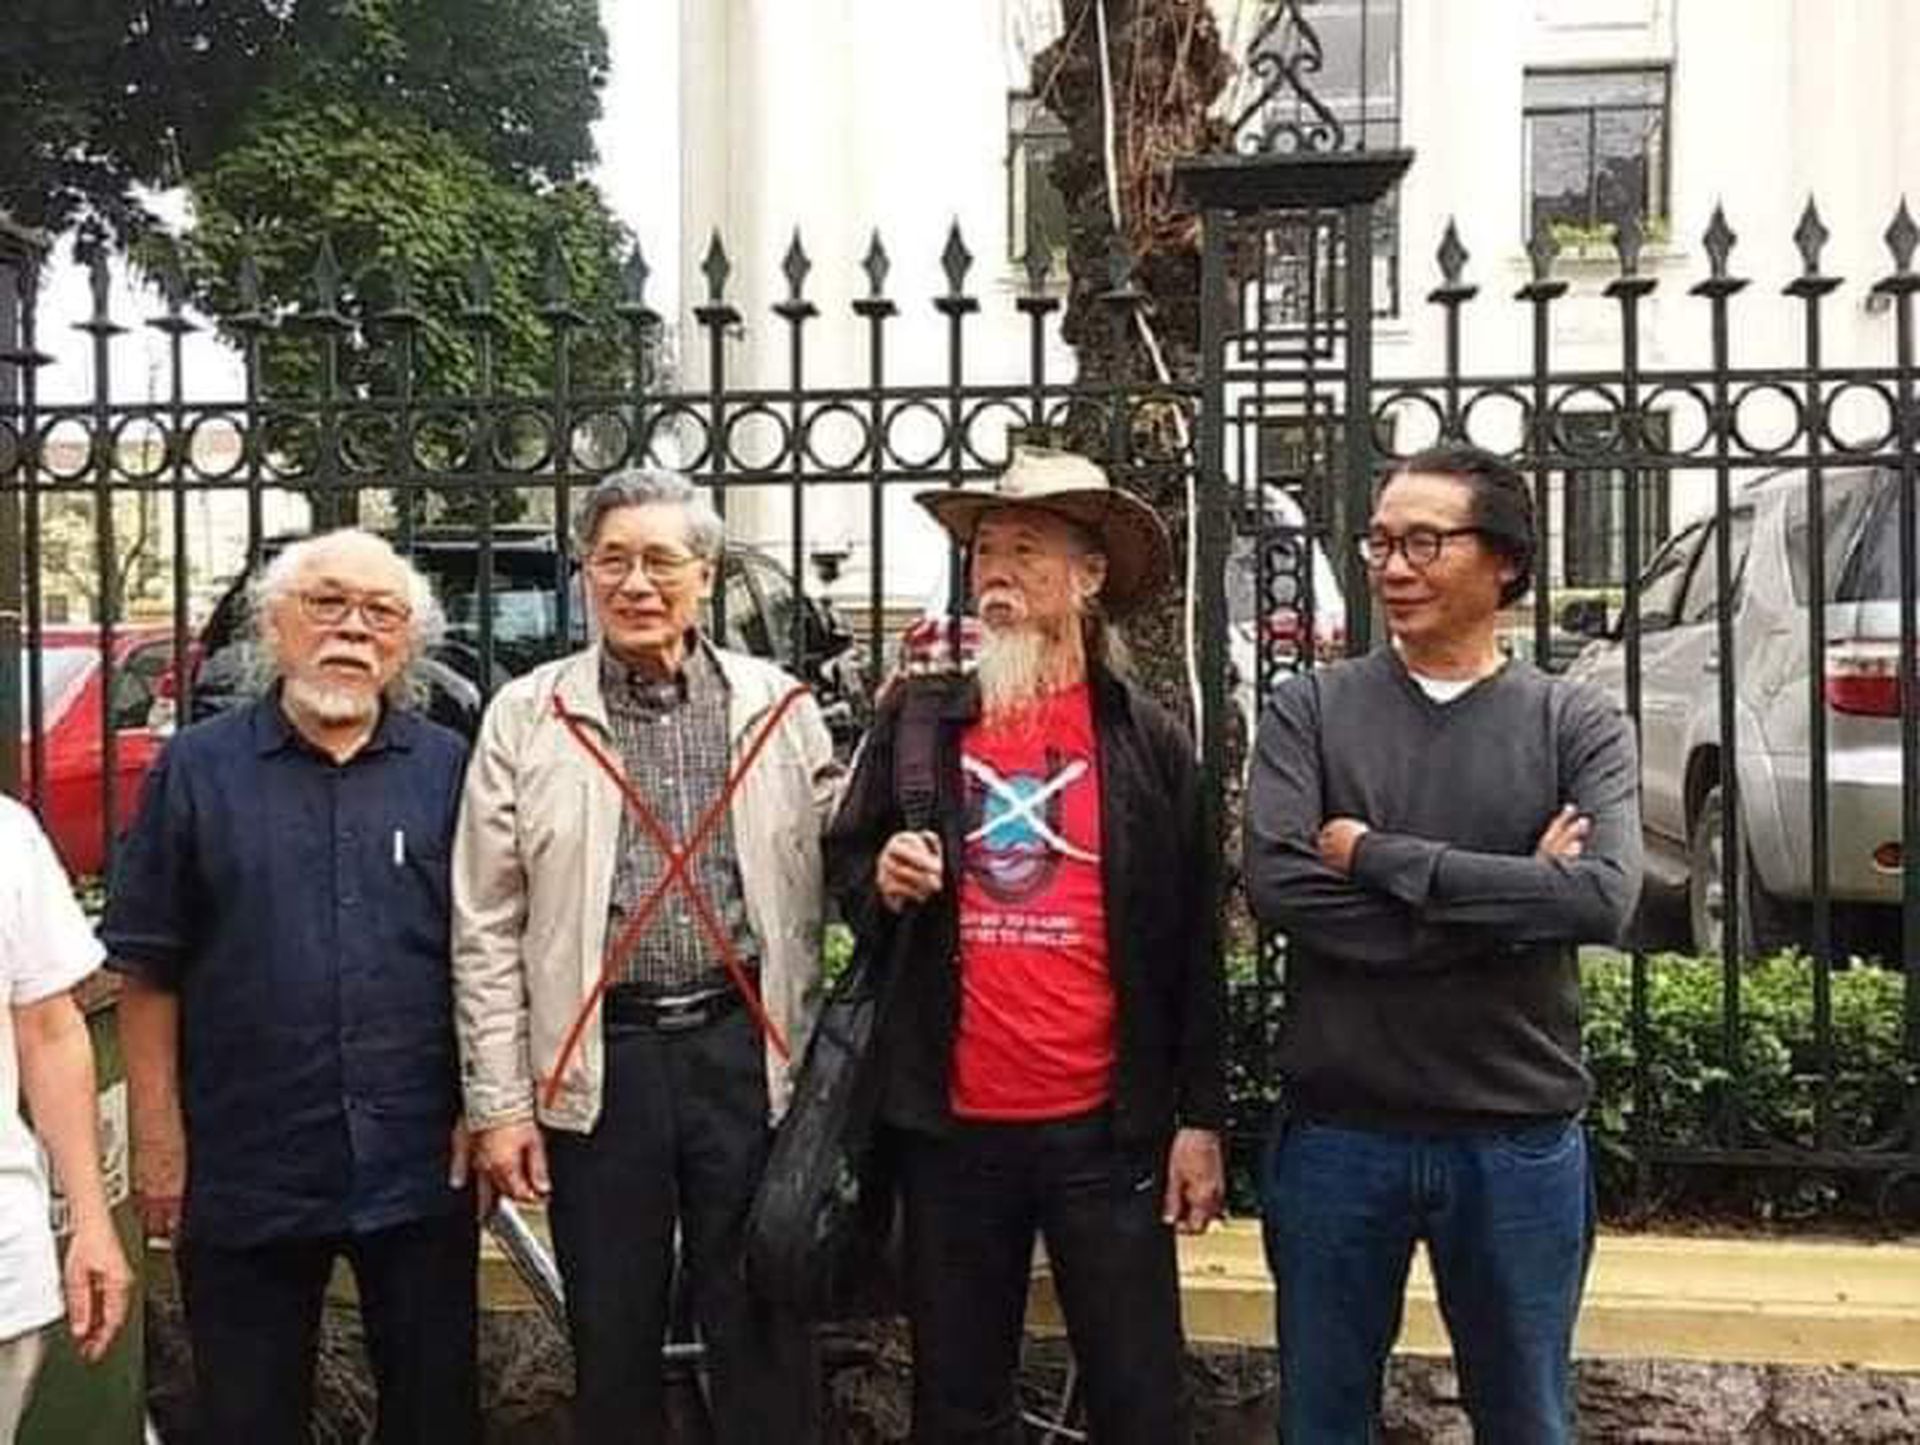 麦文庄（左二打叉者）曾在2018年宣布“退出越共”，此人居住在胡志明市，长期和欧美反越共媒体接洽，越南国内媒体到2020年已称其为“有眼无珠的忘恩负义之人”。（越南安沛报网页截图）